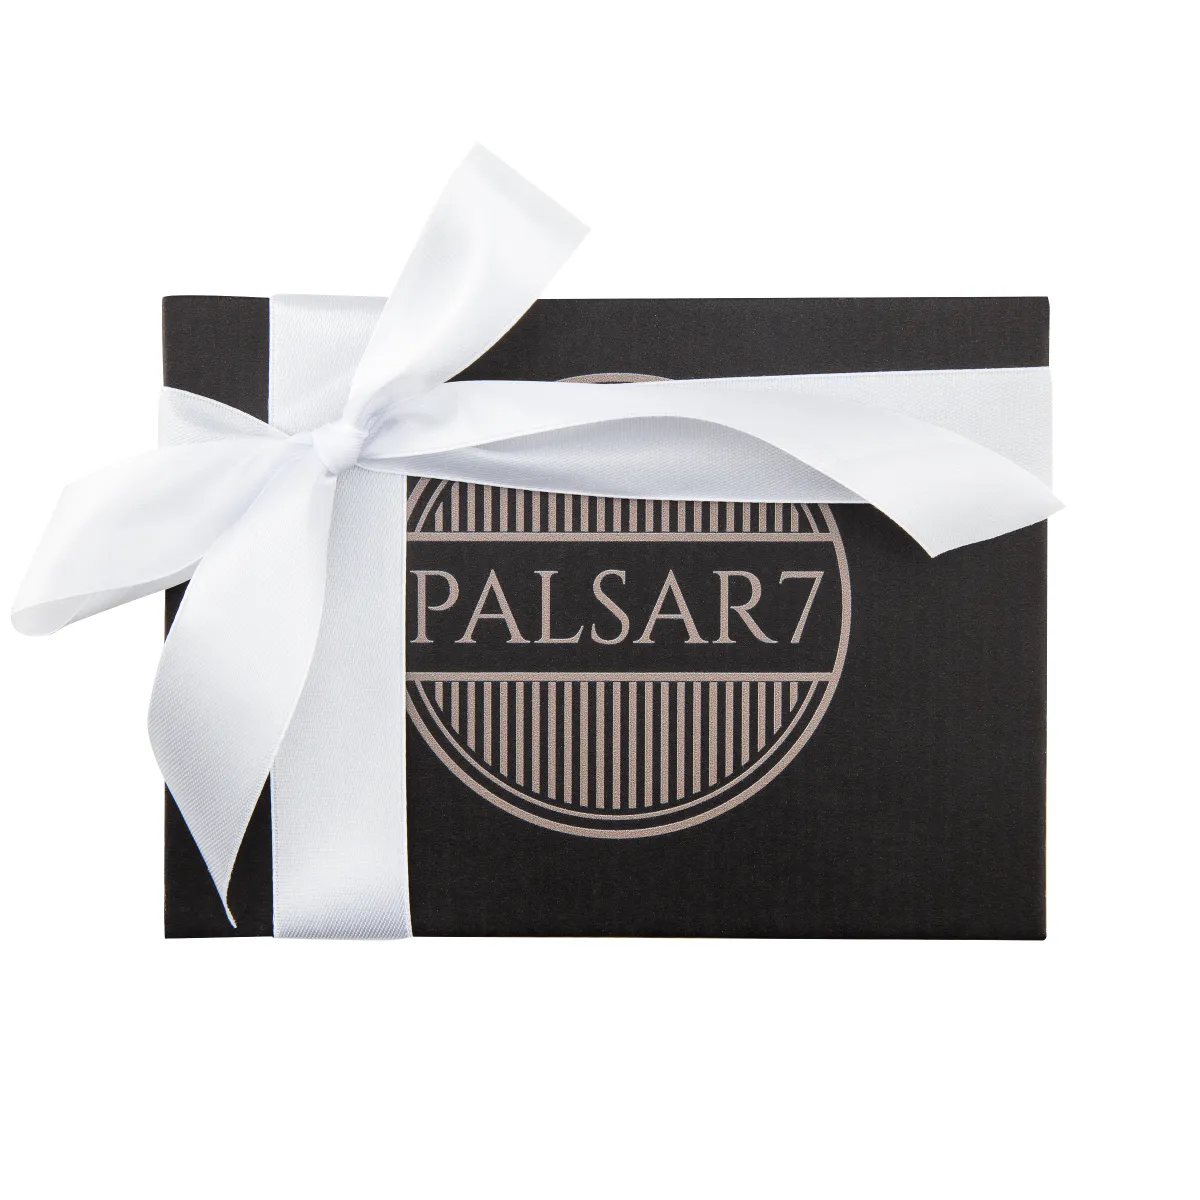 Palsar7 Kompaktní elektrický čistící kartáček na pleť 3v1 